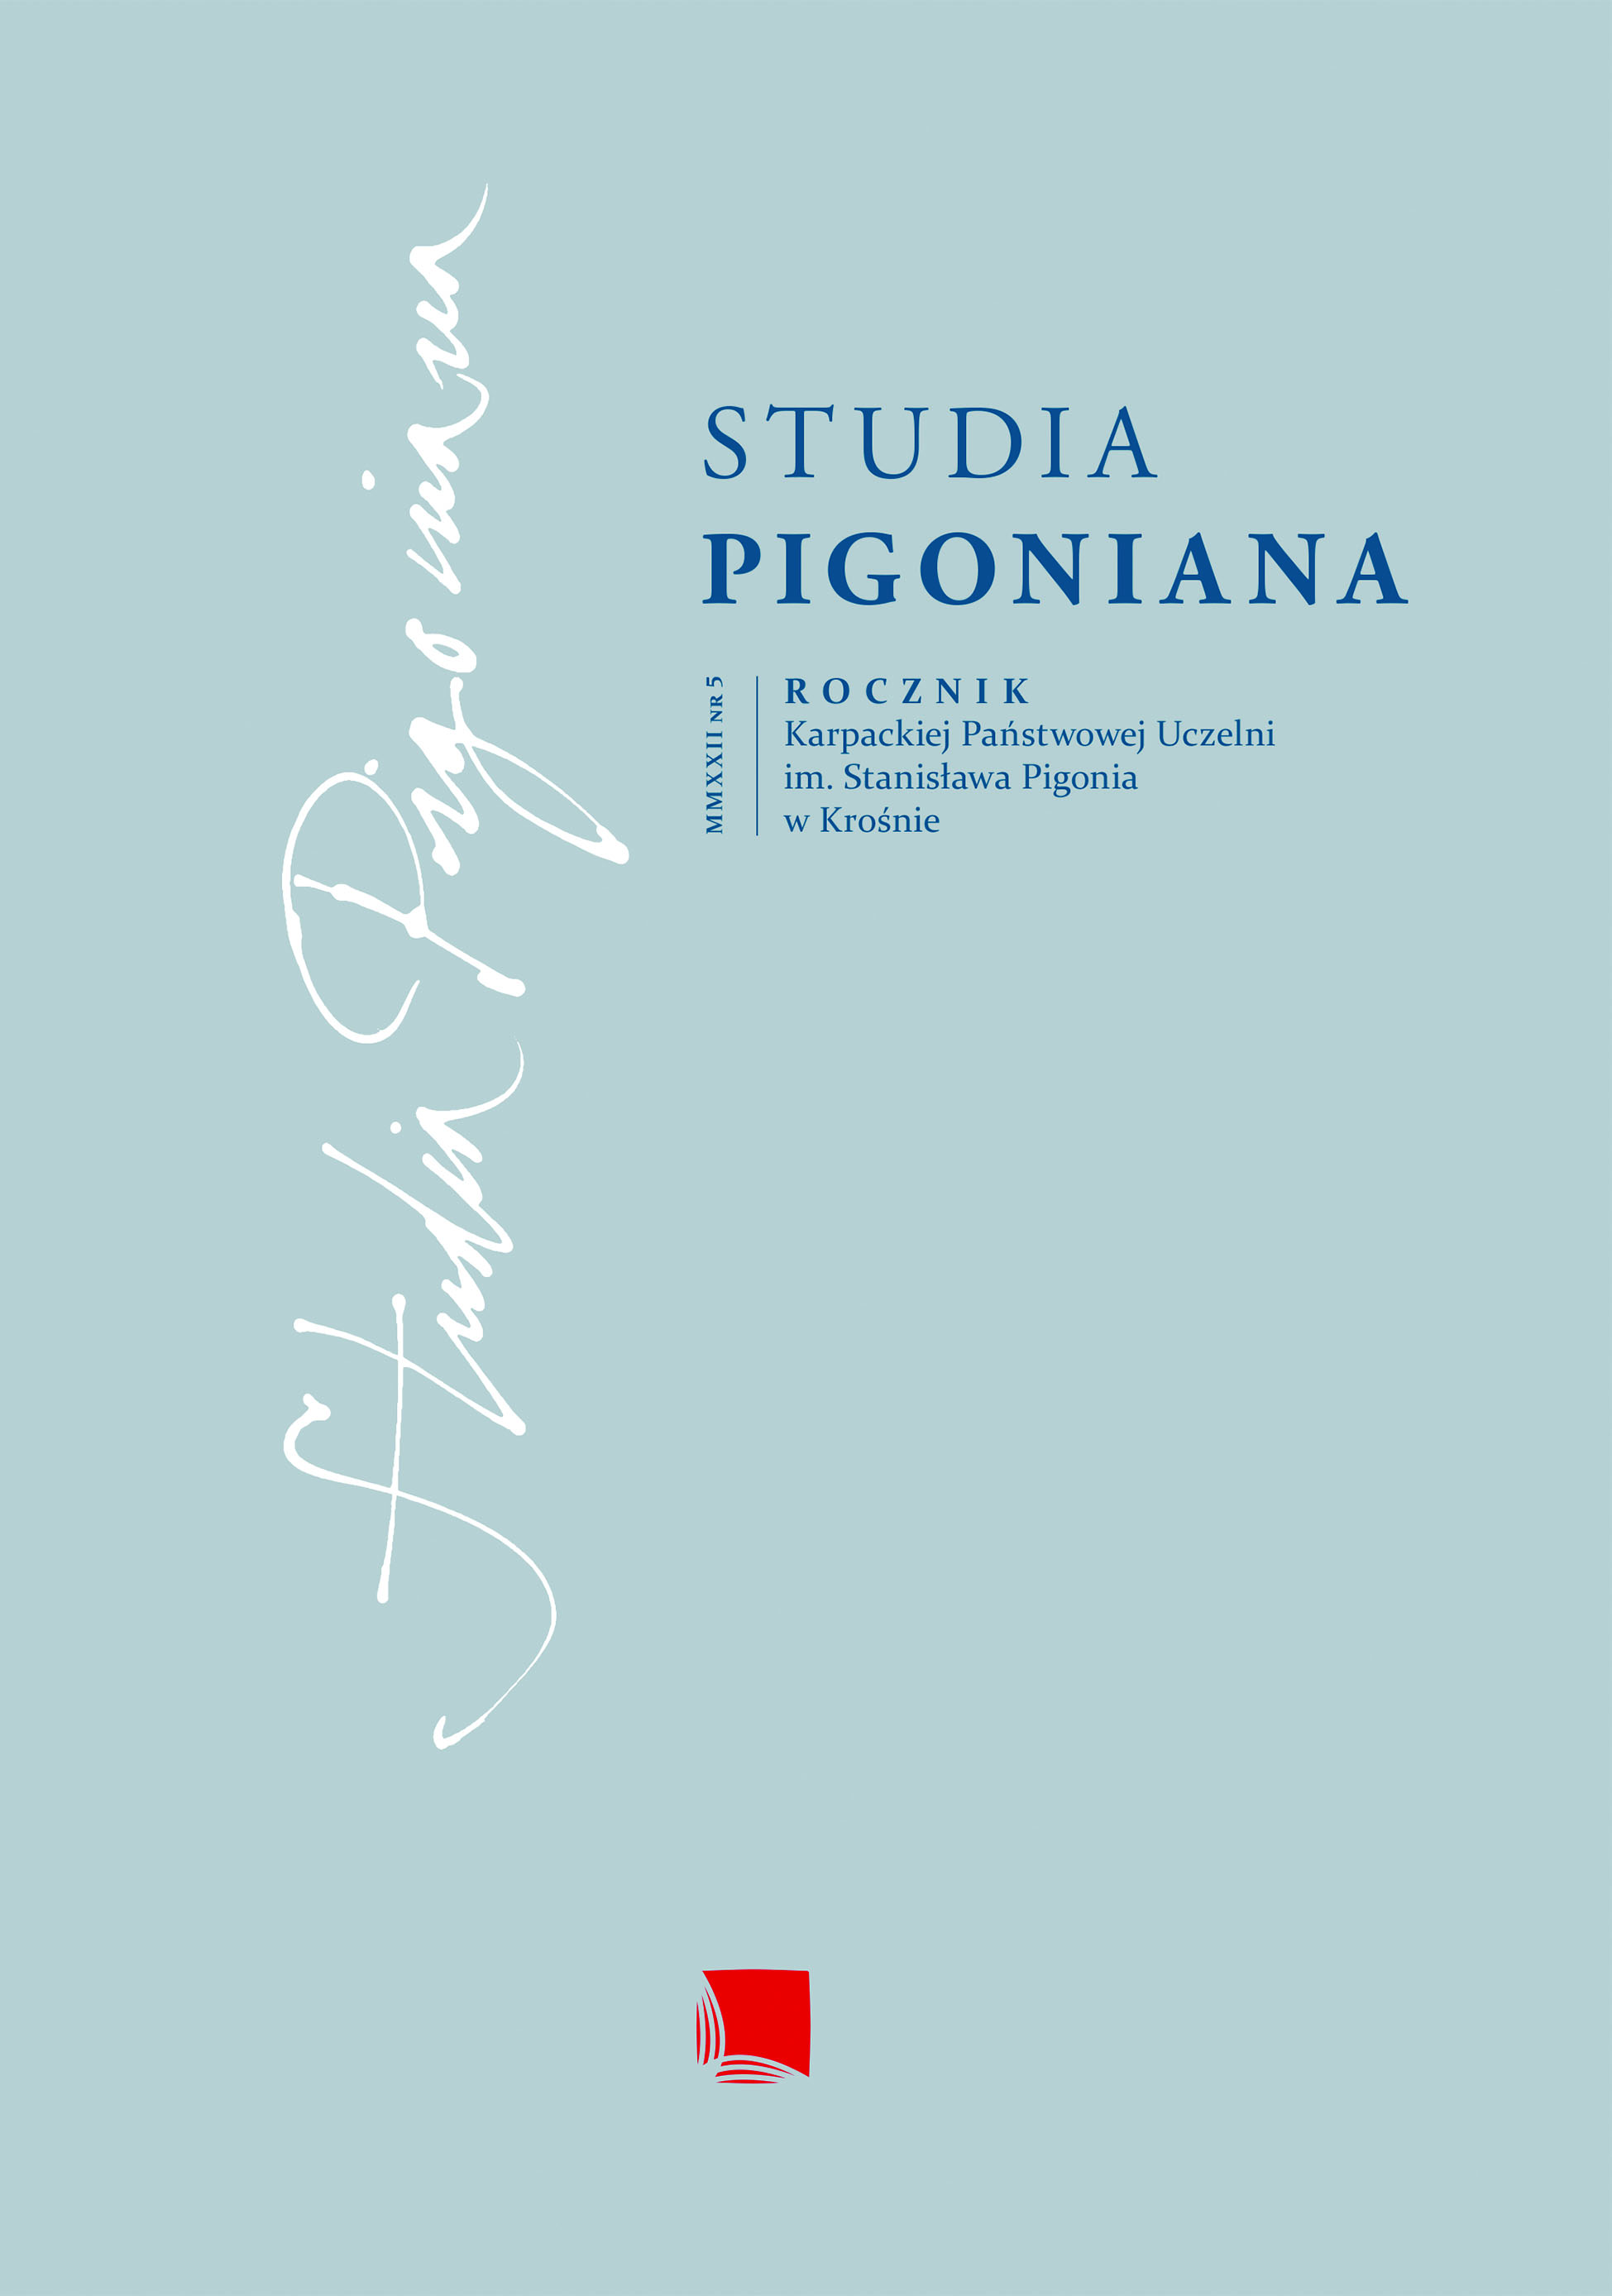 About Stanisław Wyspiański’s sketbooks Cover Image